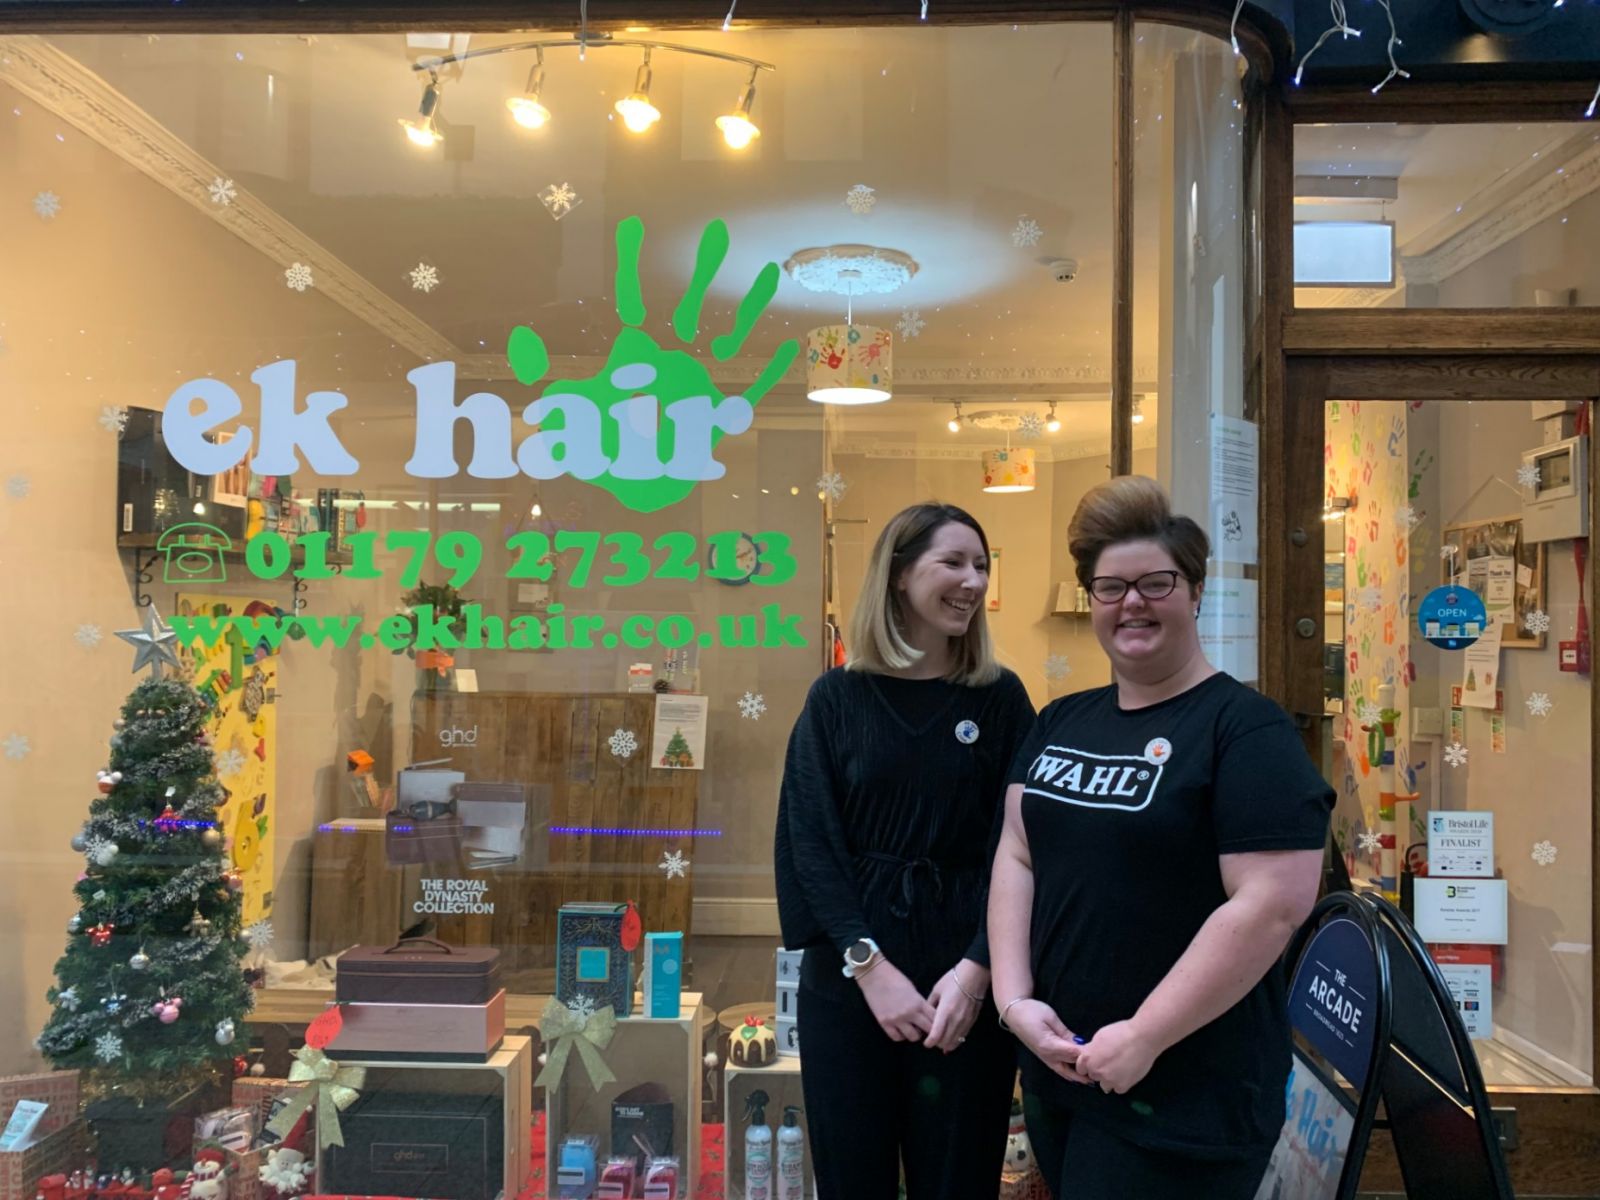 The EK Hair team at the salon, in November 2019